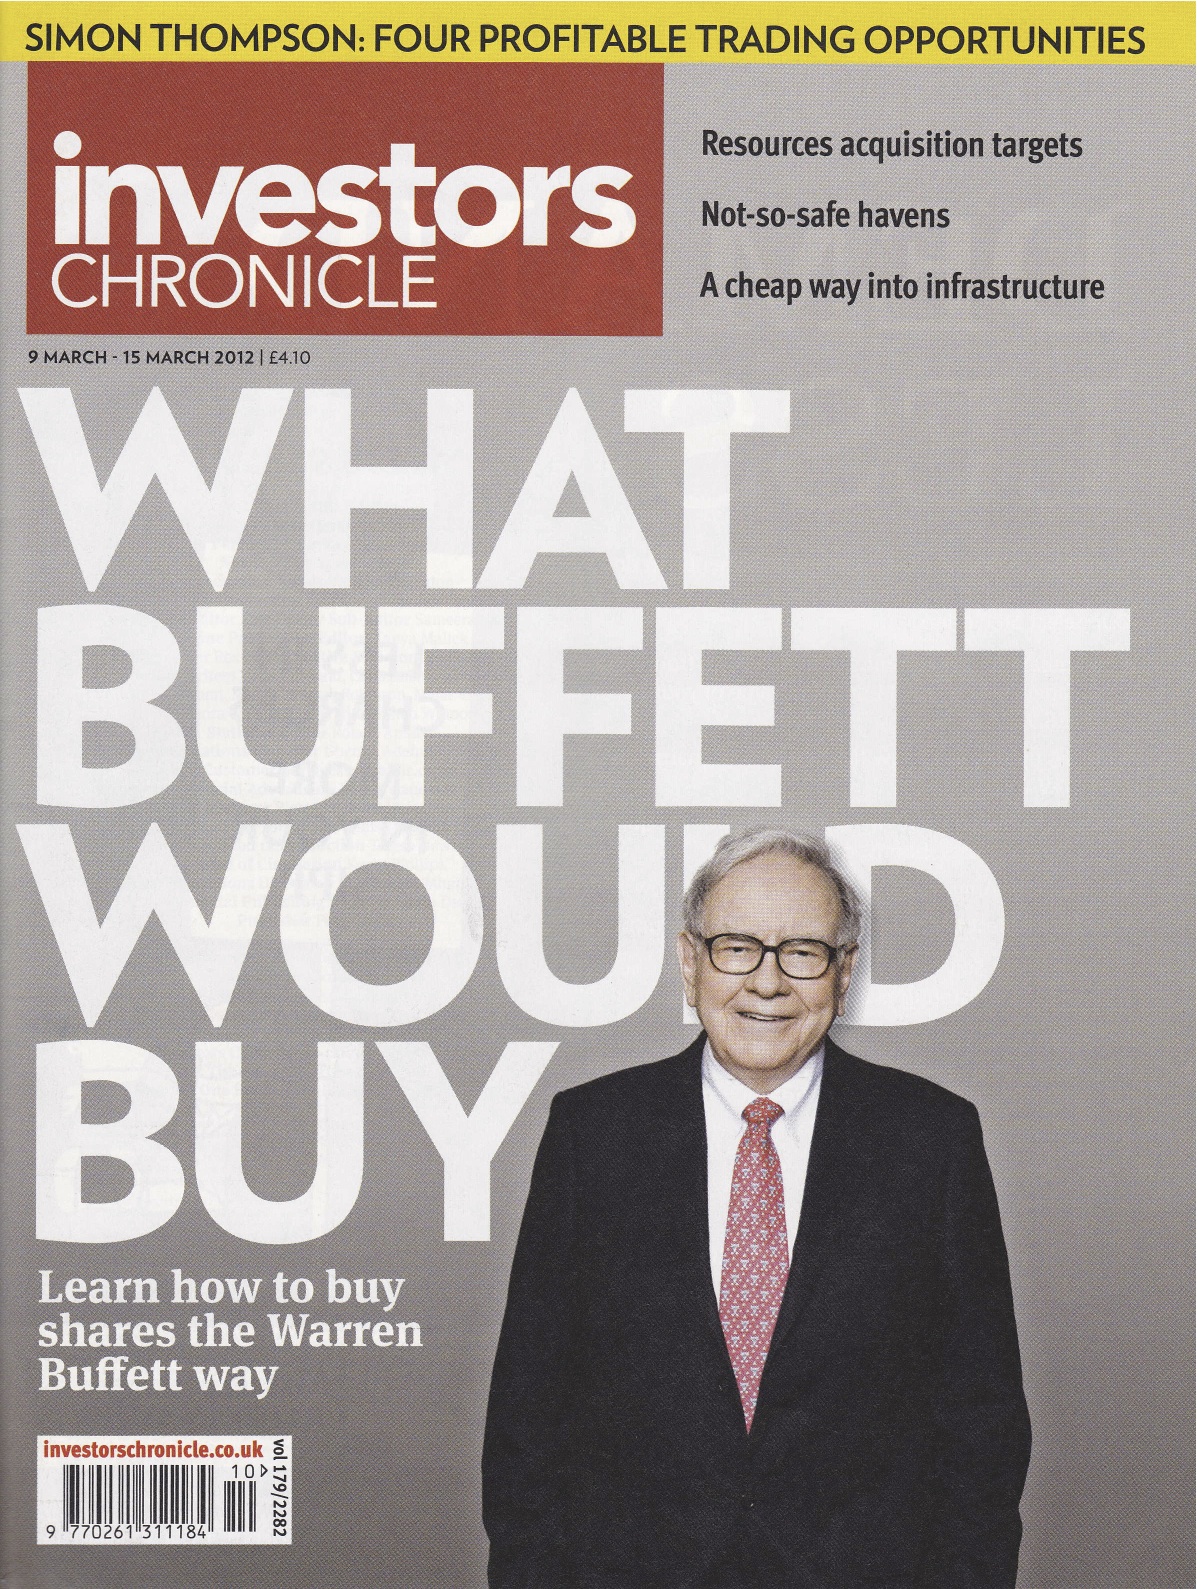 Mary Buffett on Warren Buffett